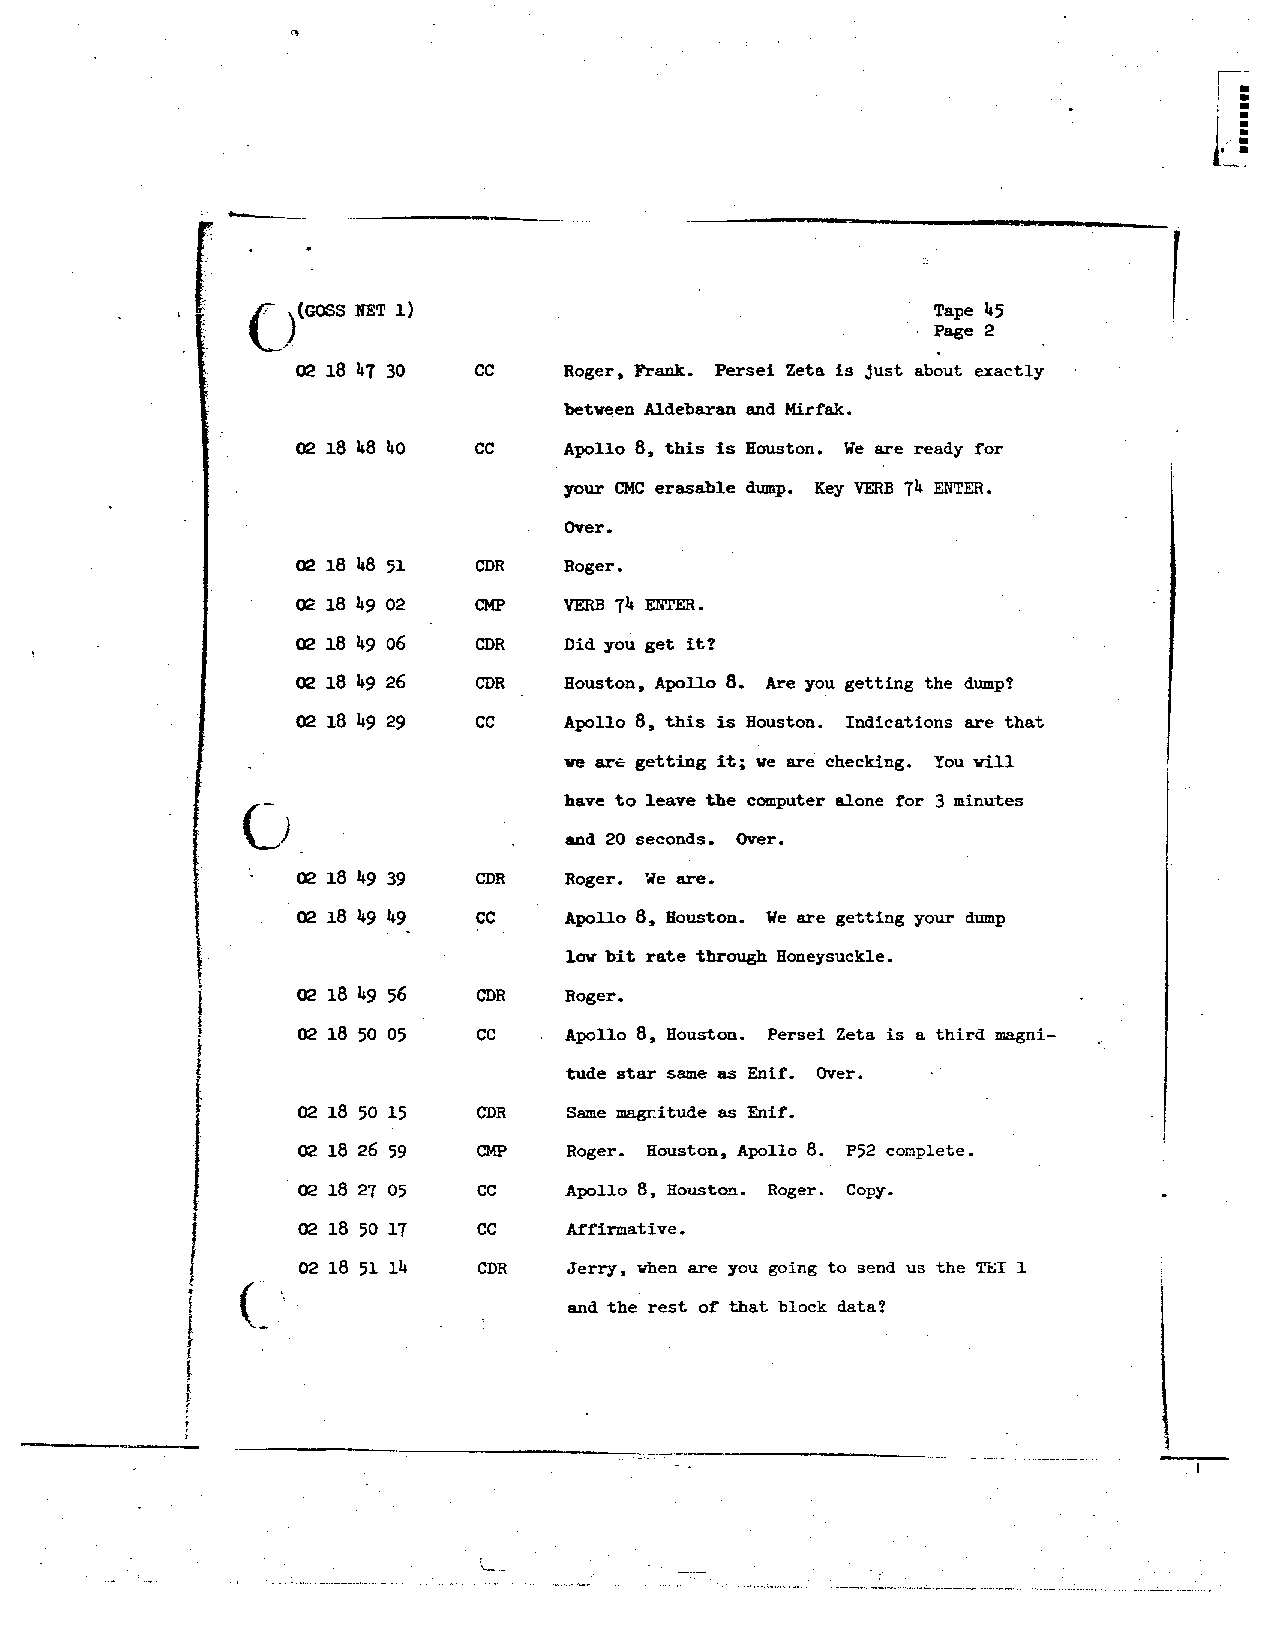 Page 341 of Apollo 8’s original transcript